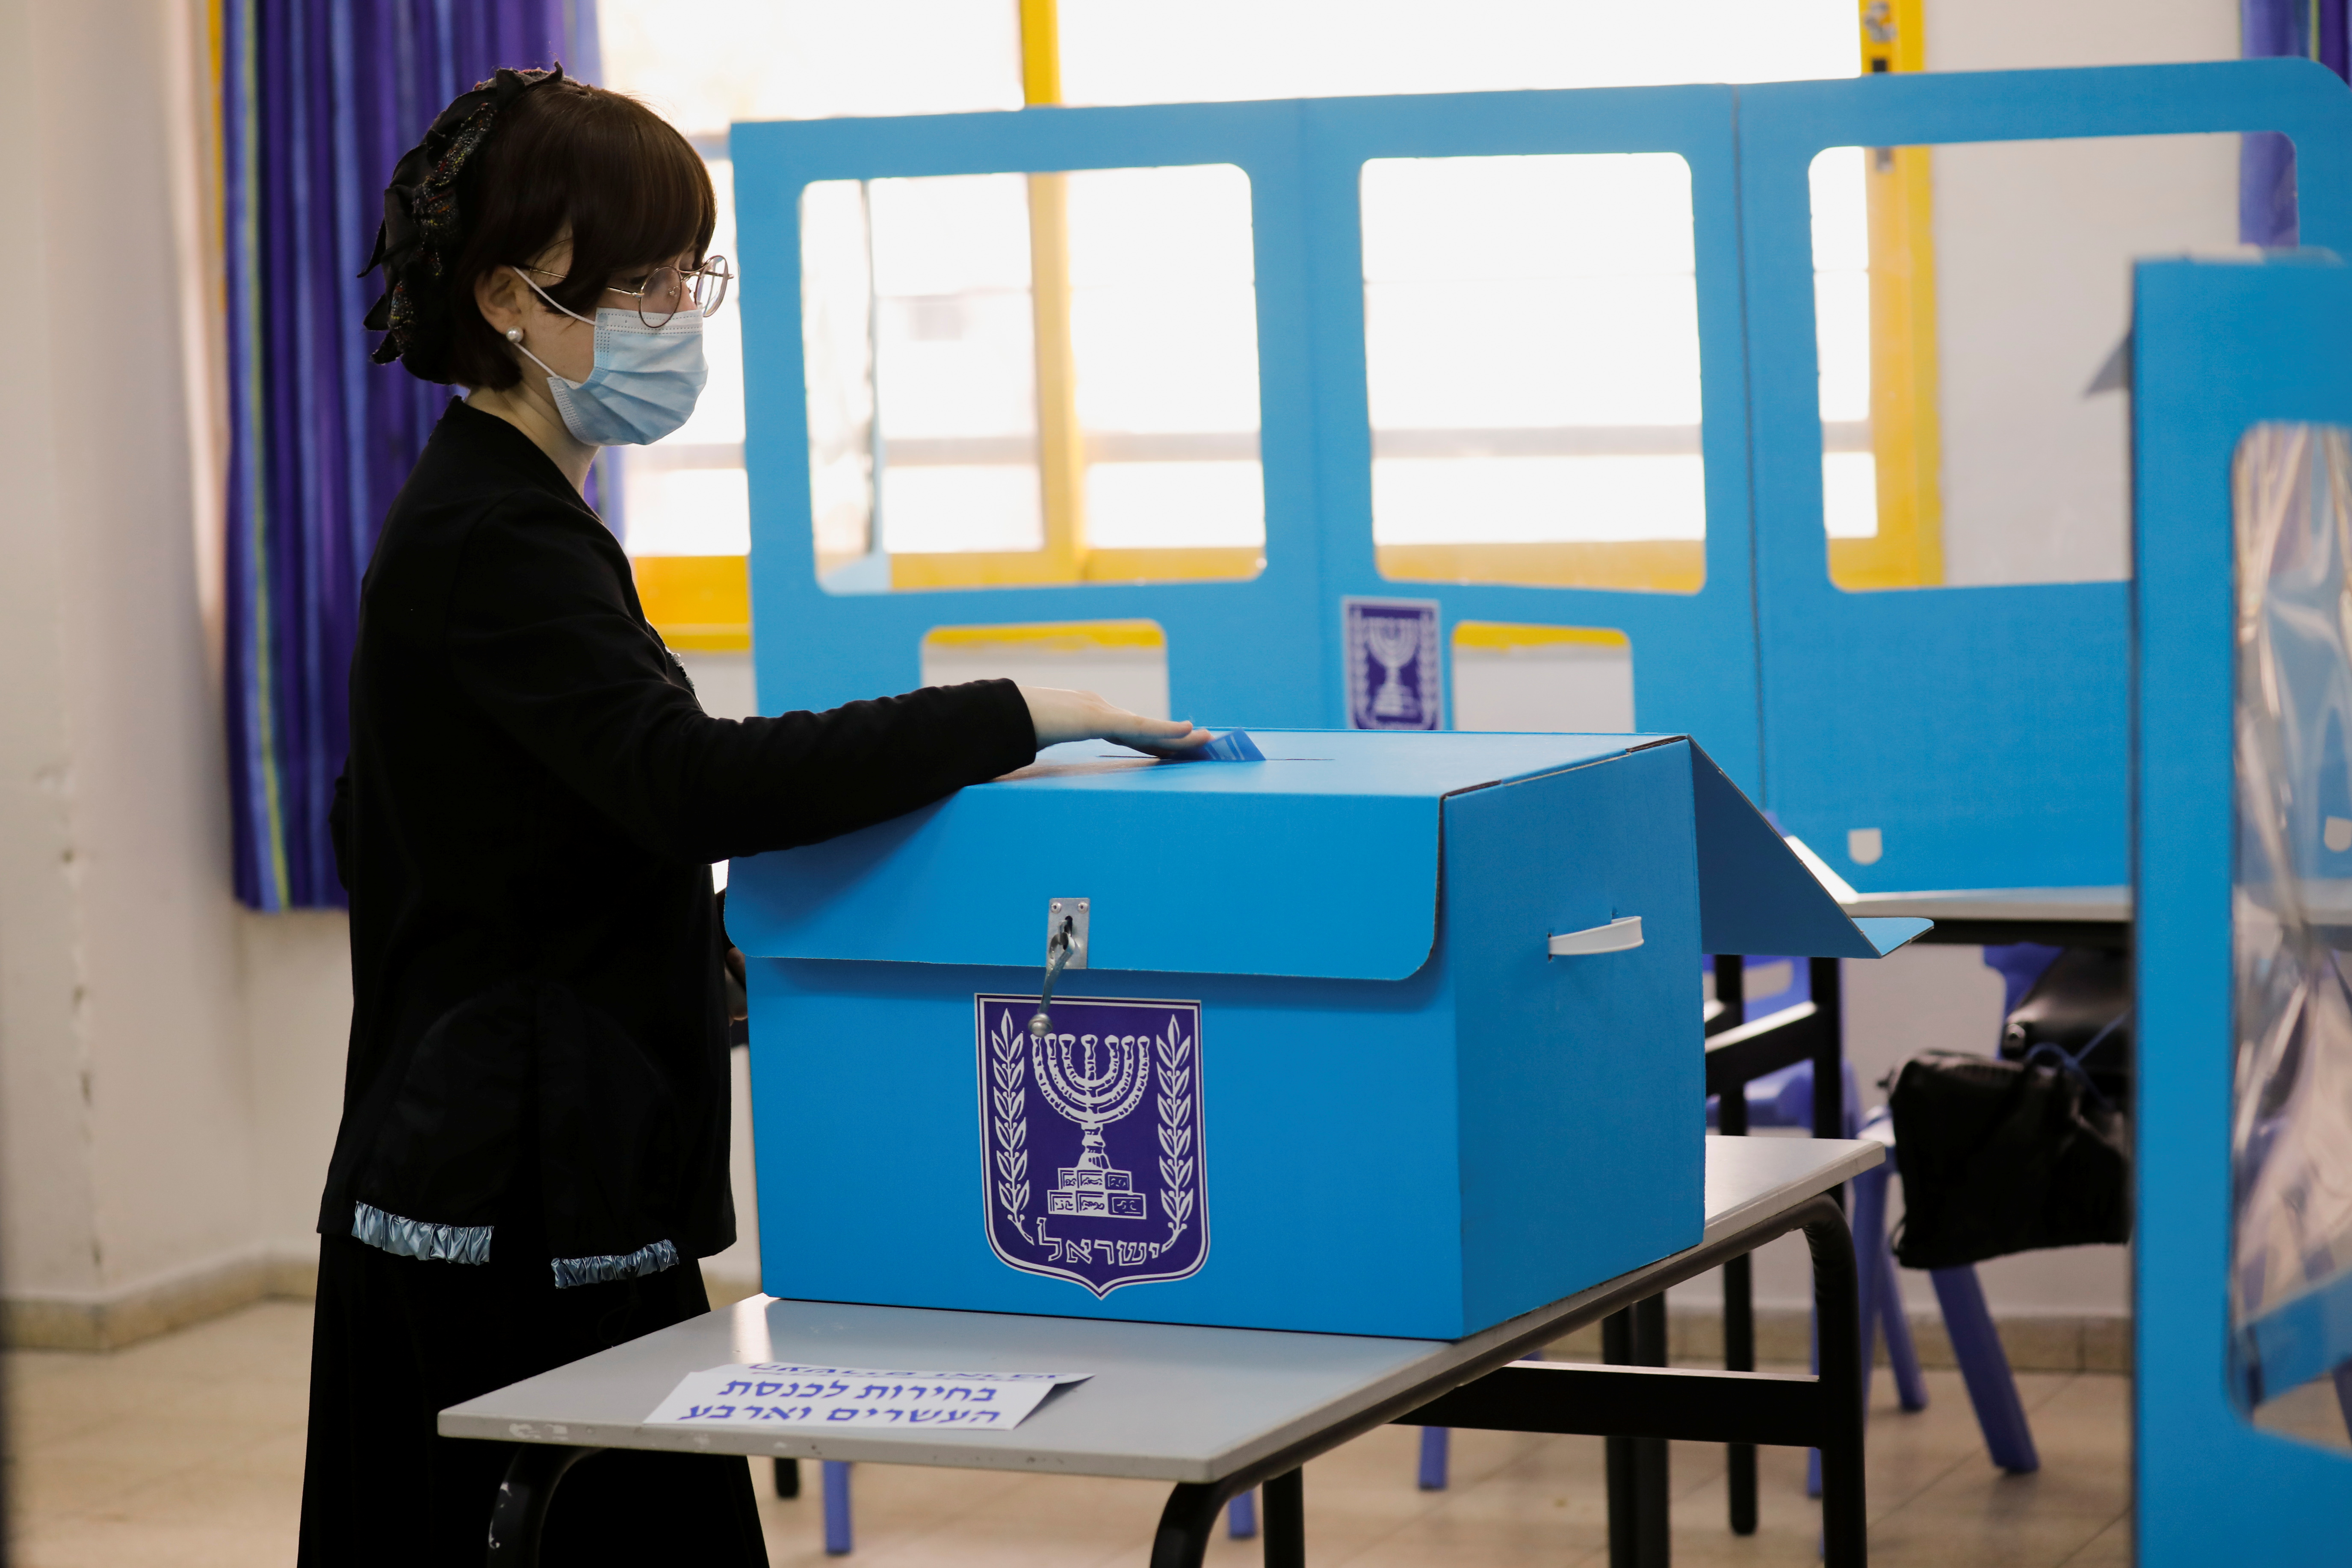 Una mujer judía ultraortodoxa emite su voto en las elecciones generales de Israel en un colegio electoral en Ashdod, Israel, el 23 de marzo de 2021. REUTERS / Amir Cohen